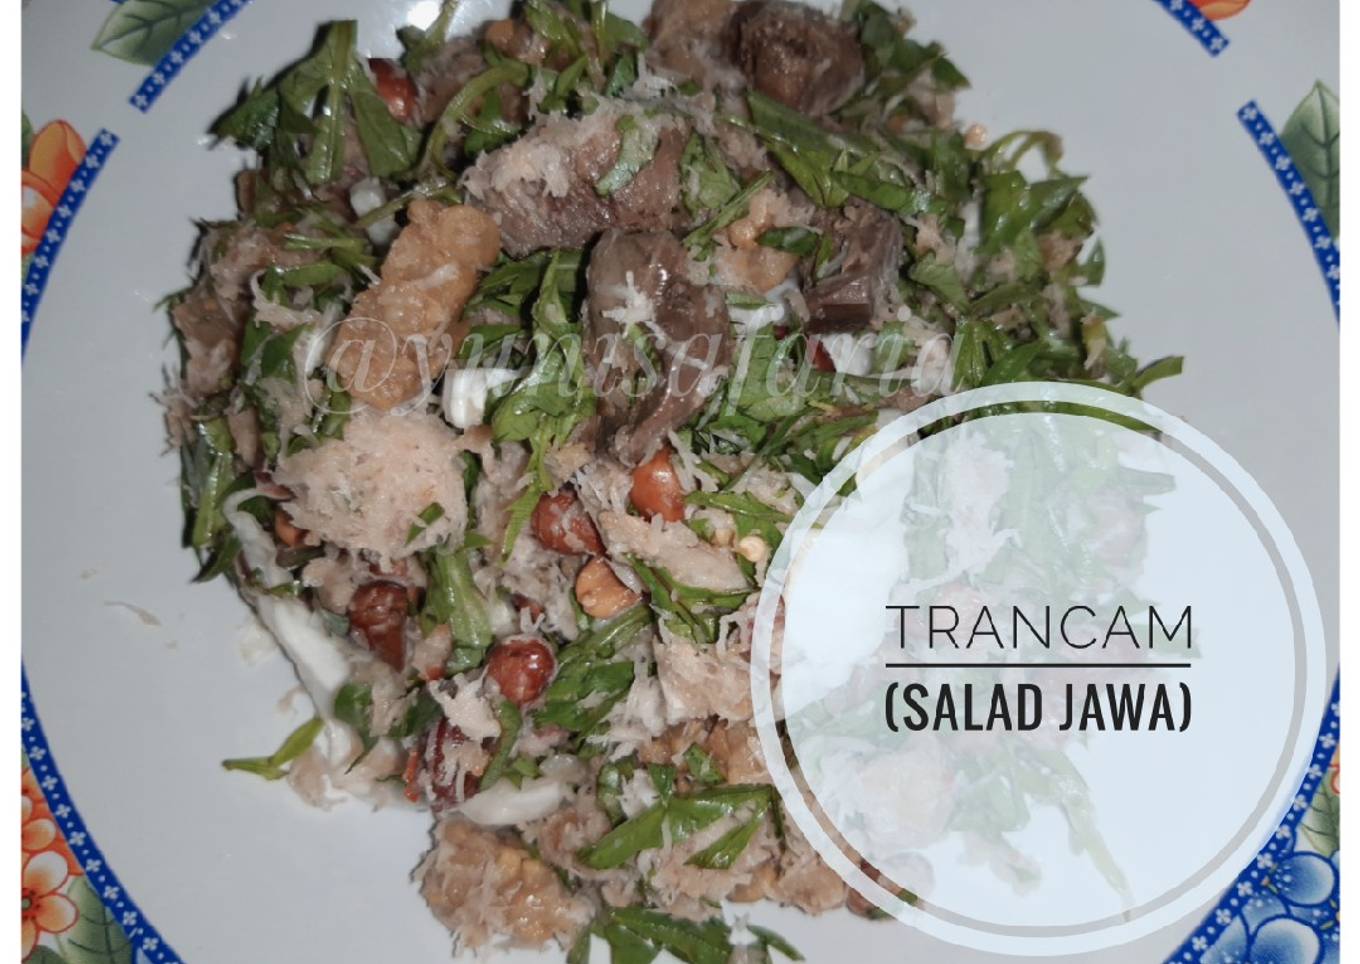 Trancam (salad jawa)